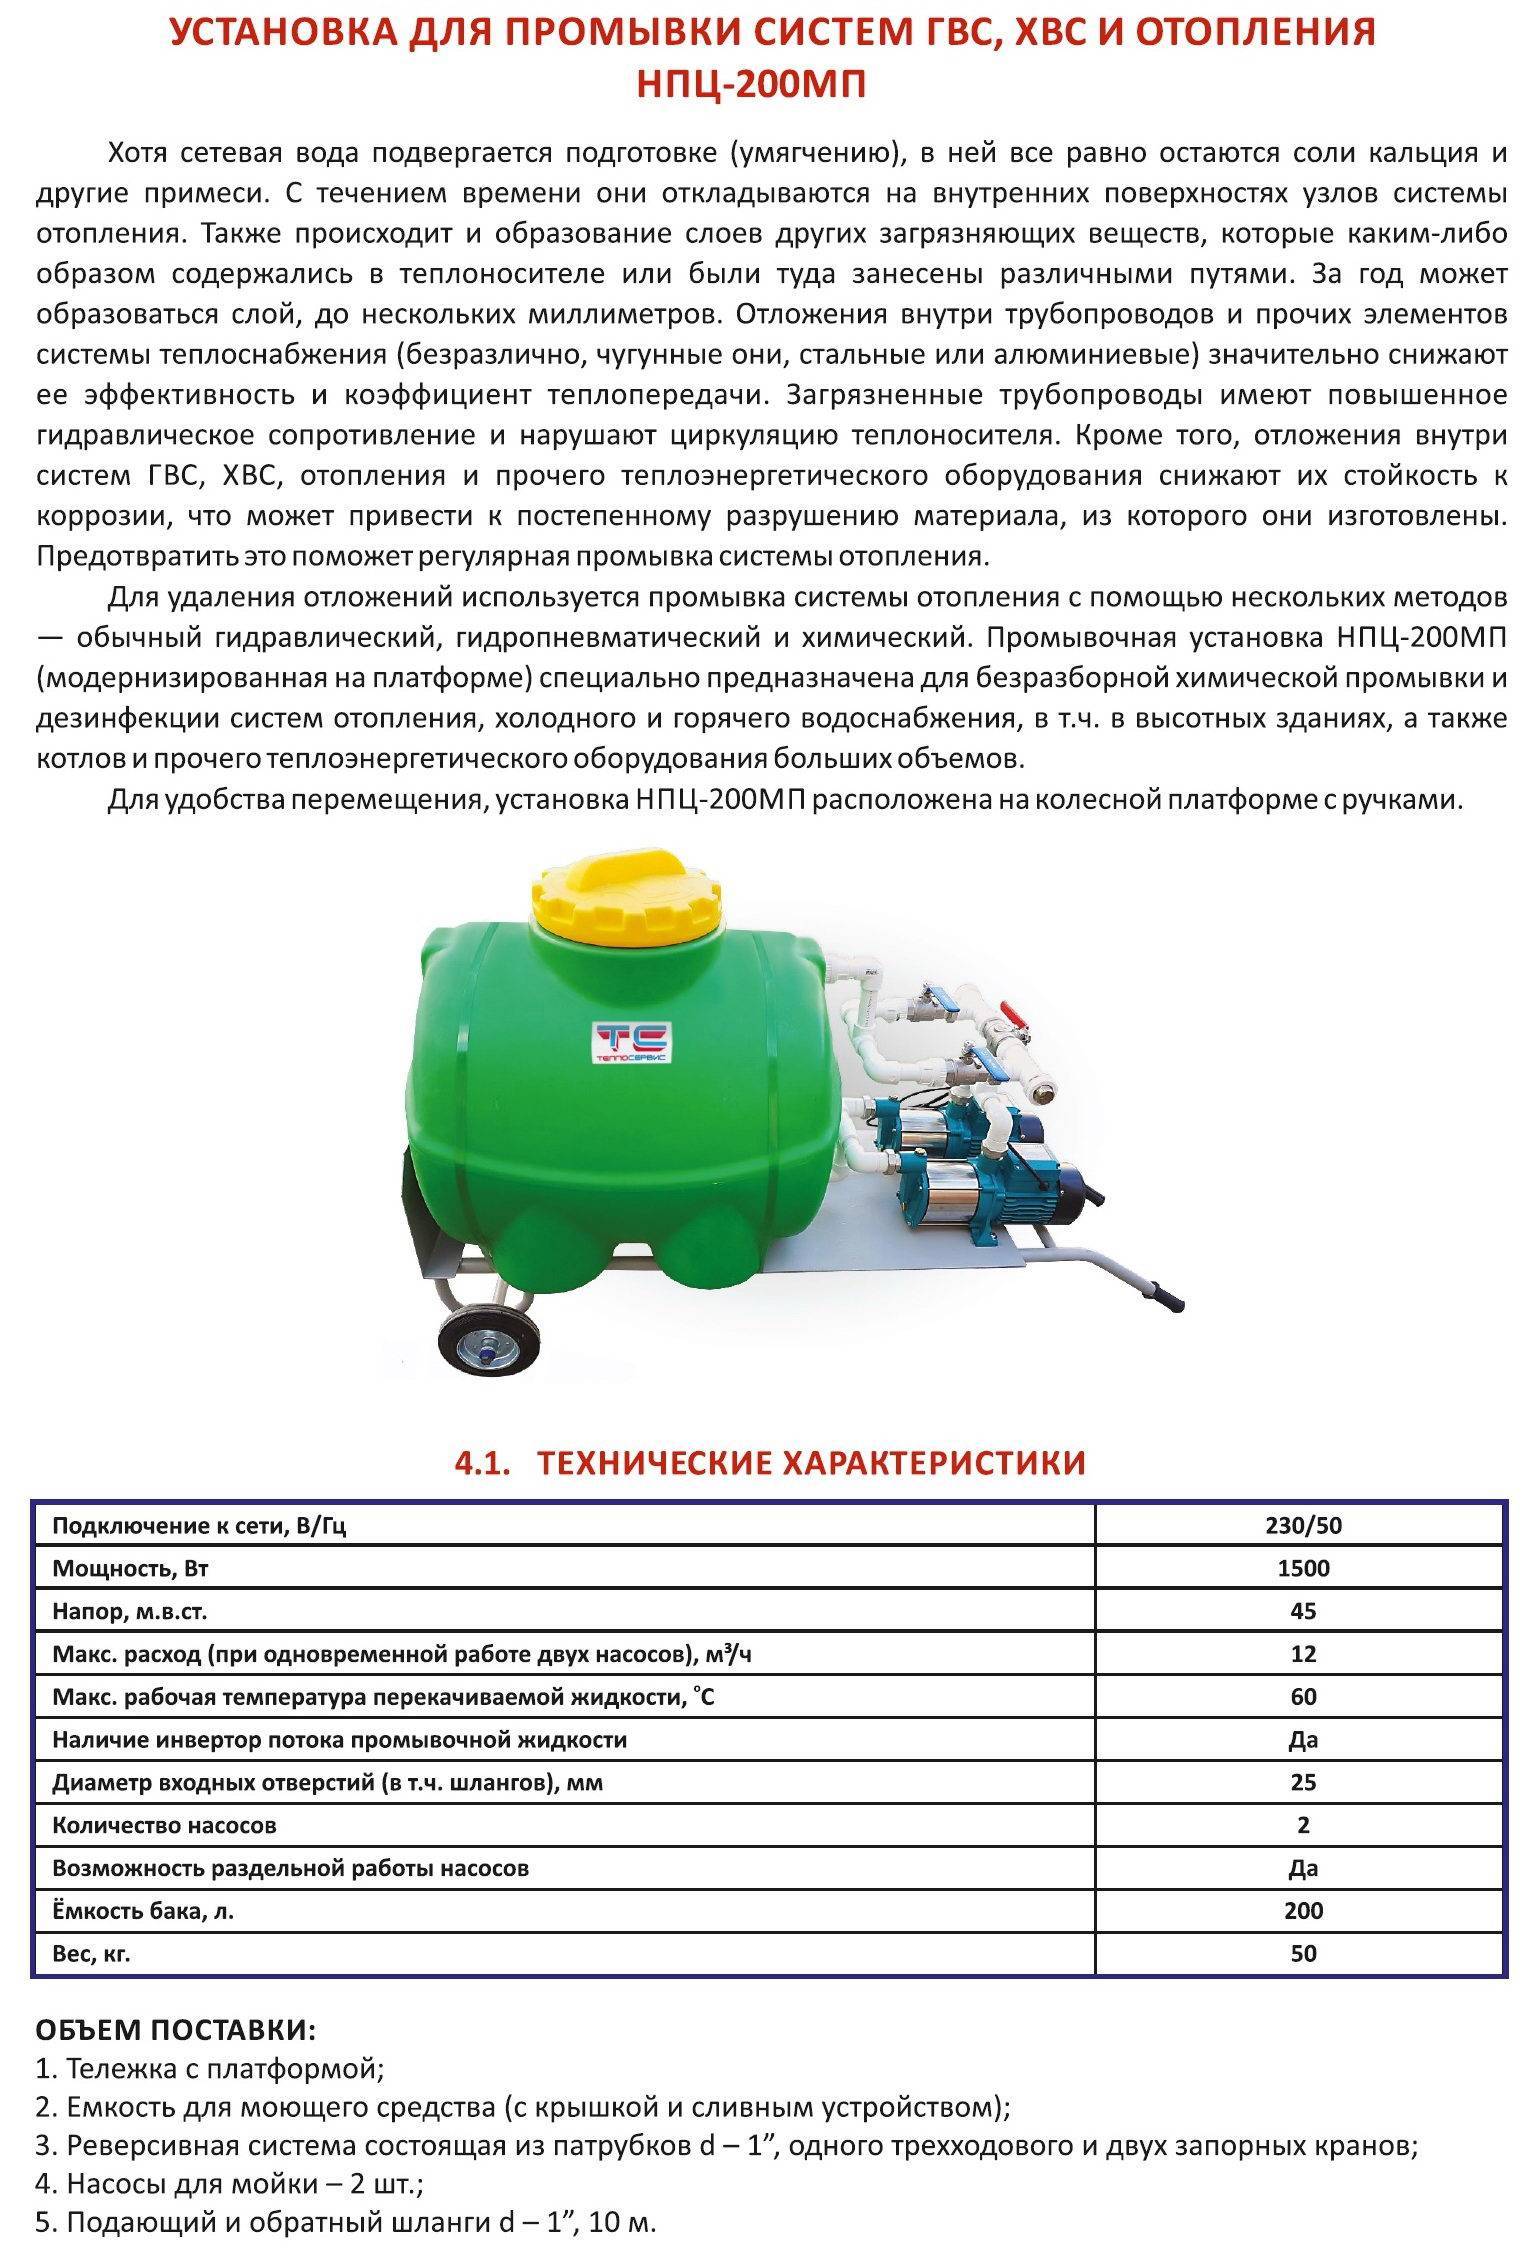 Как и чем почистить отопительный контур: топ-10 средств и жидкостей для промывки систем отопления | file-don.ru